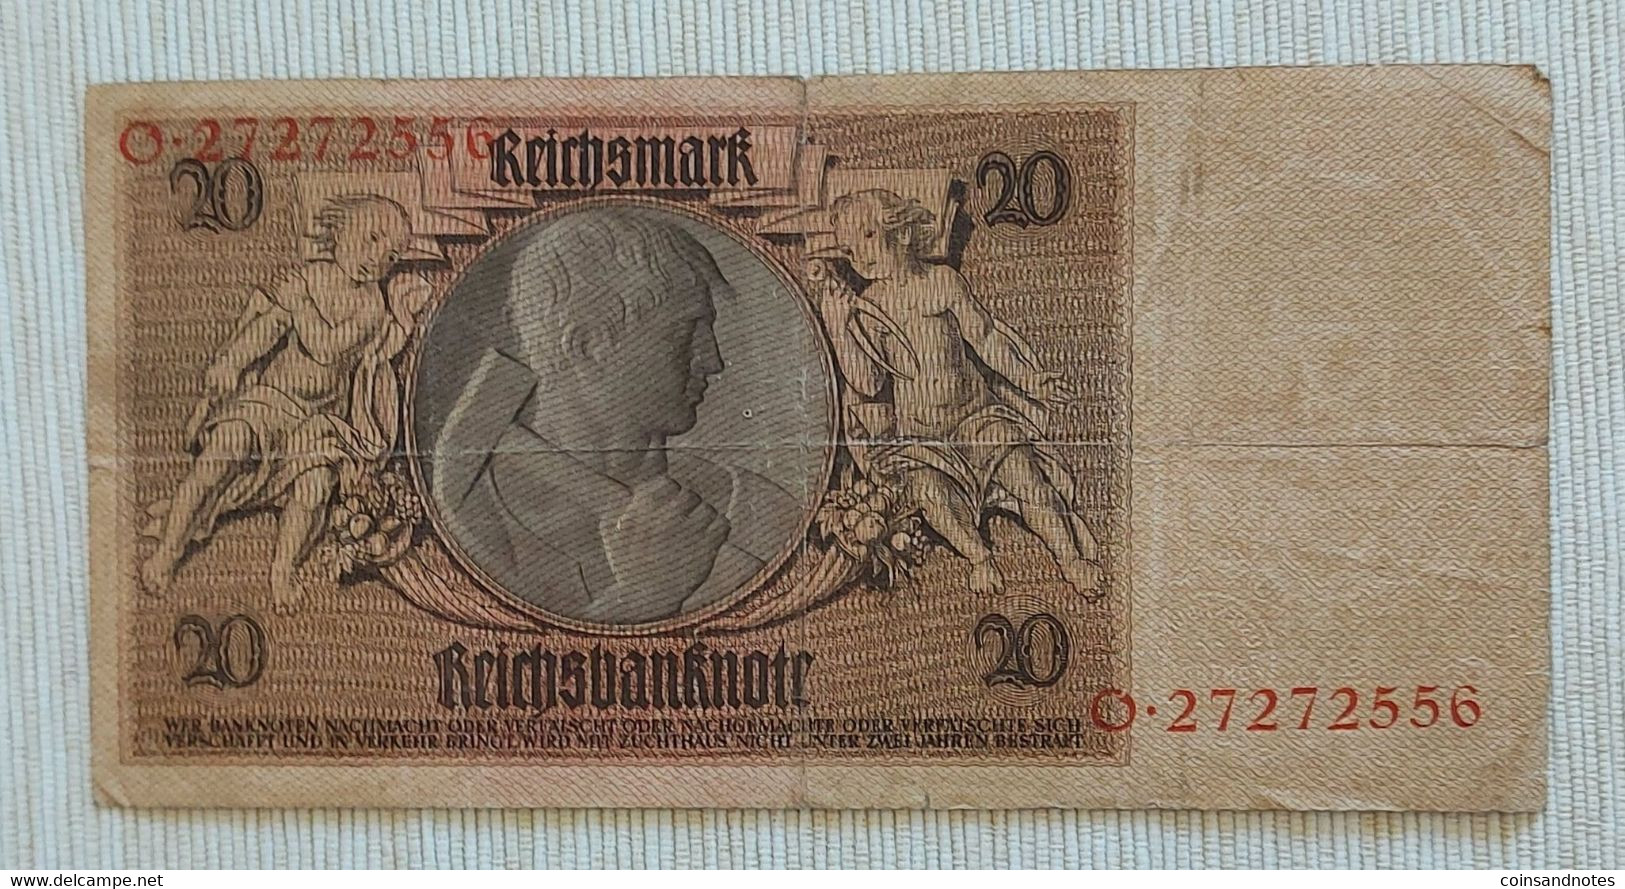 Germany 1929 - 20 Reichsmark - No O.27272556 - P# 181a - VF - 20 Mark